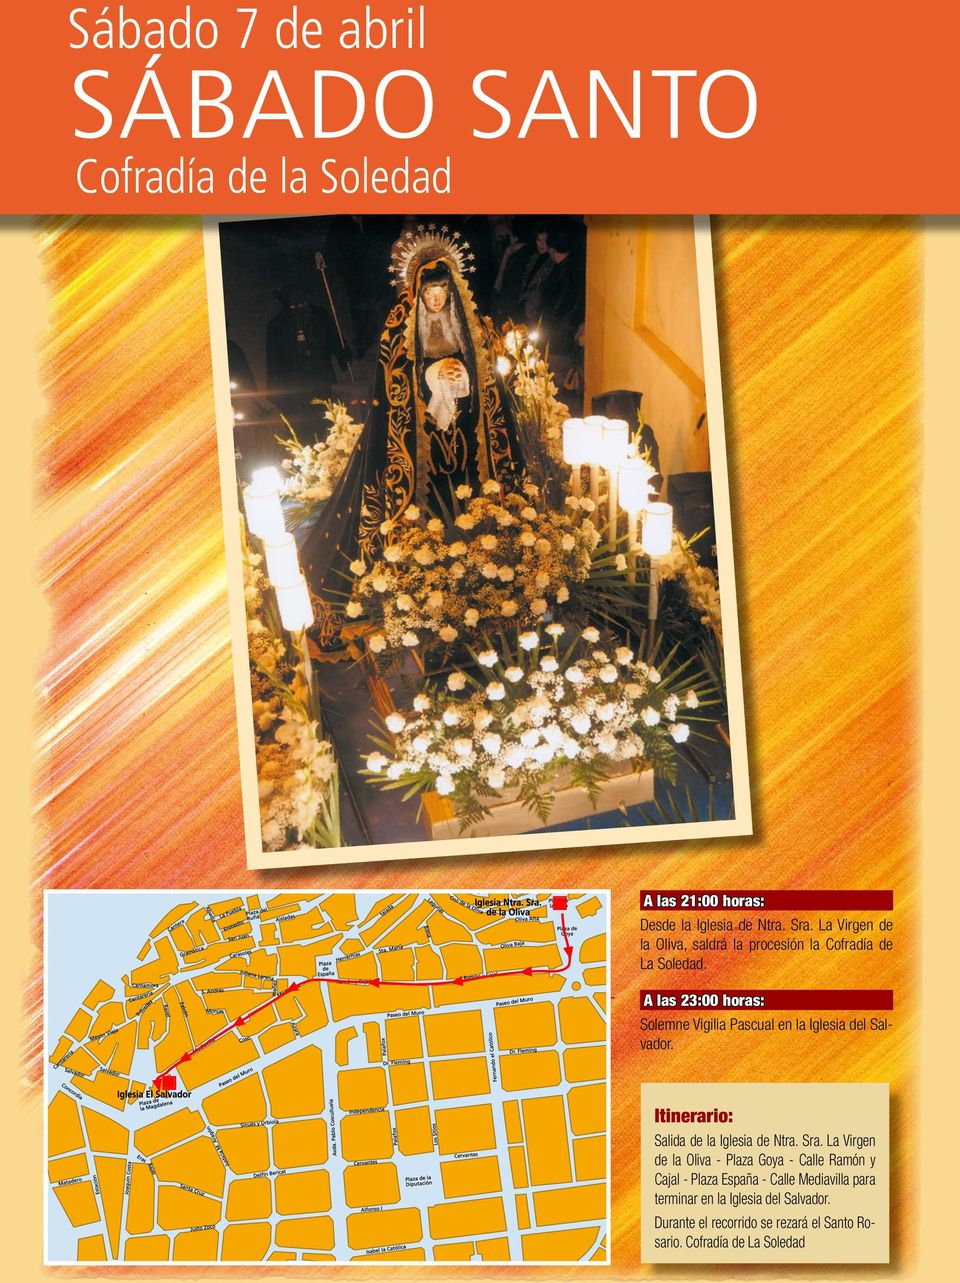 A las 23:00 horas: Solemne Vigilia Pascual en la Iglesia del Salvador. Itinerario: Salida de la Iglesia de Ntra. Sra.